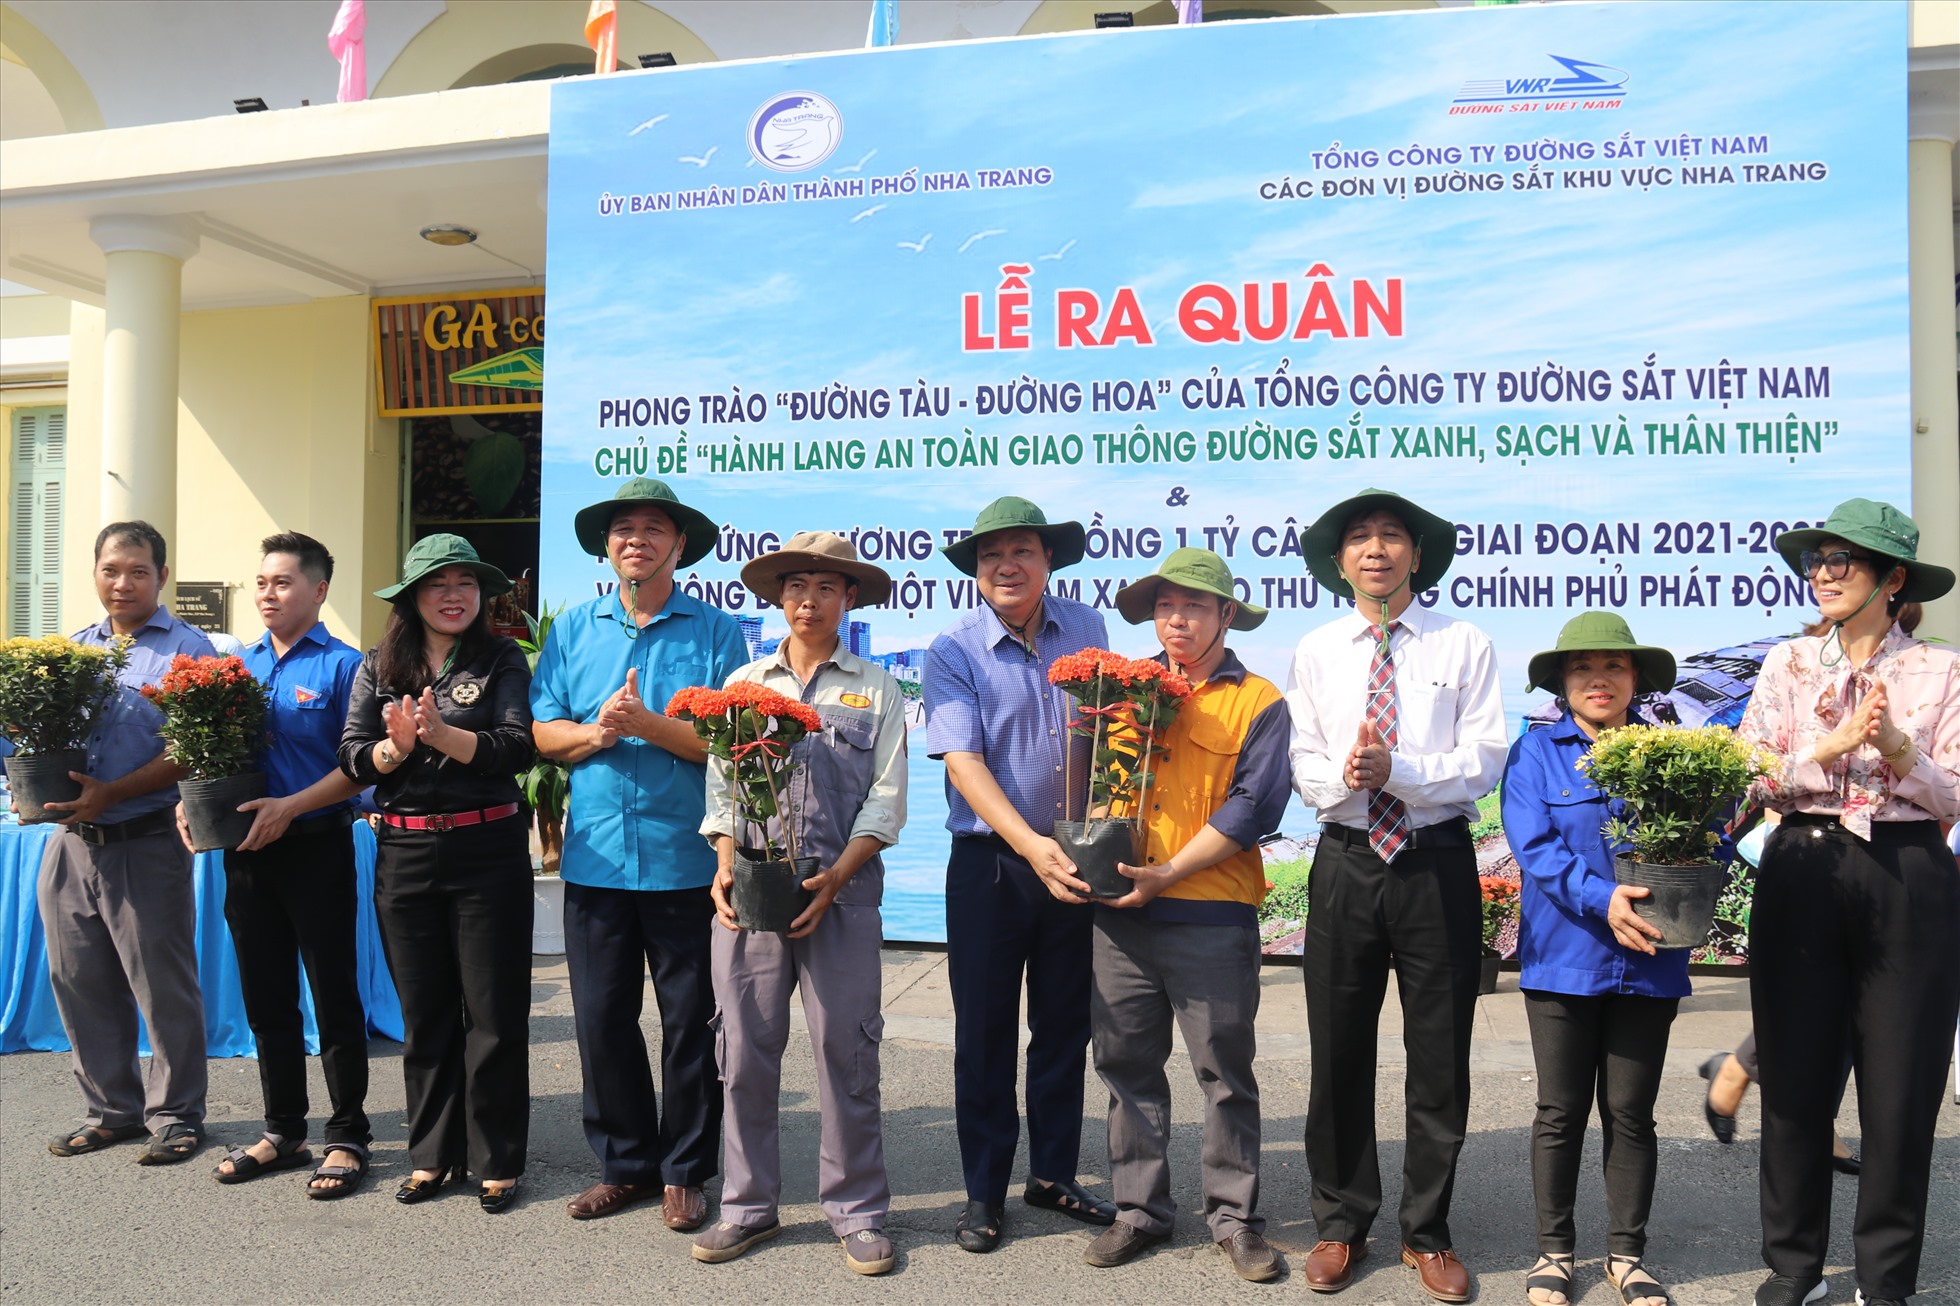 Ngành Đường sắt phối hợp tổ chức phát động phong trào “đường tàu - đường hoa” khu vực Nha Trang. Ảnh: Phương Linh